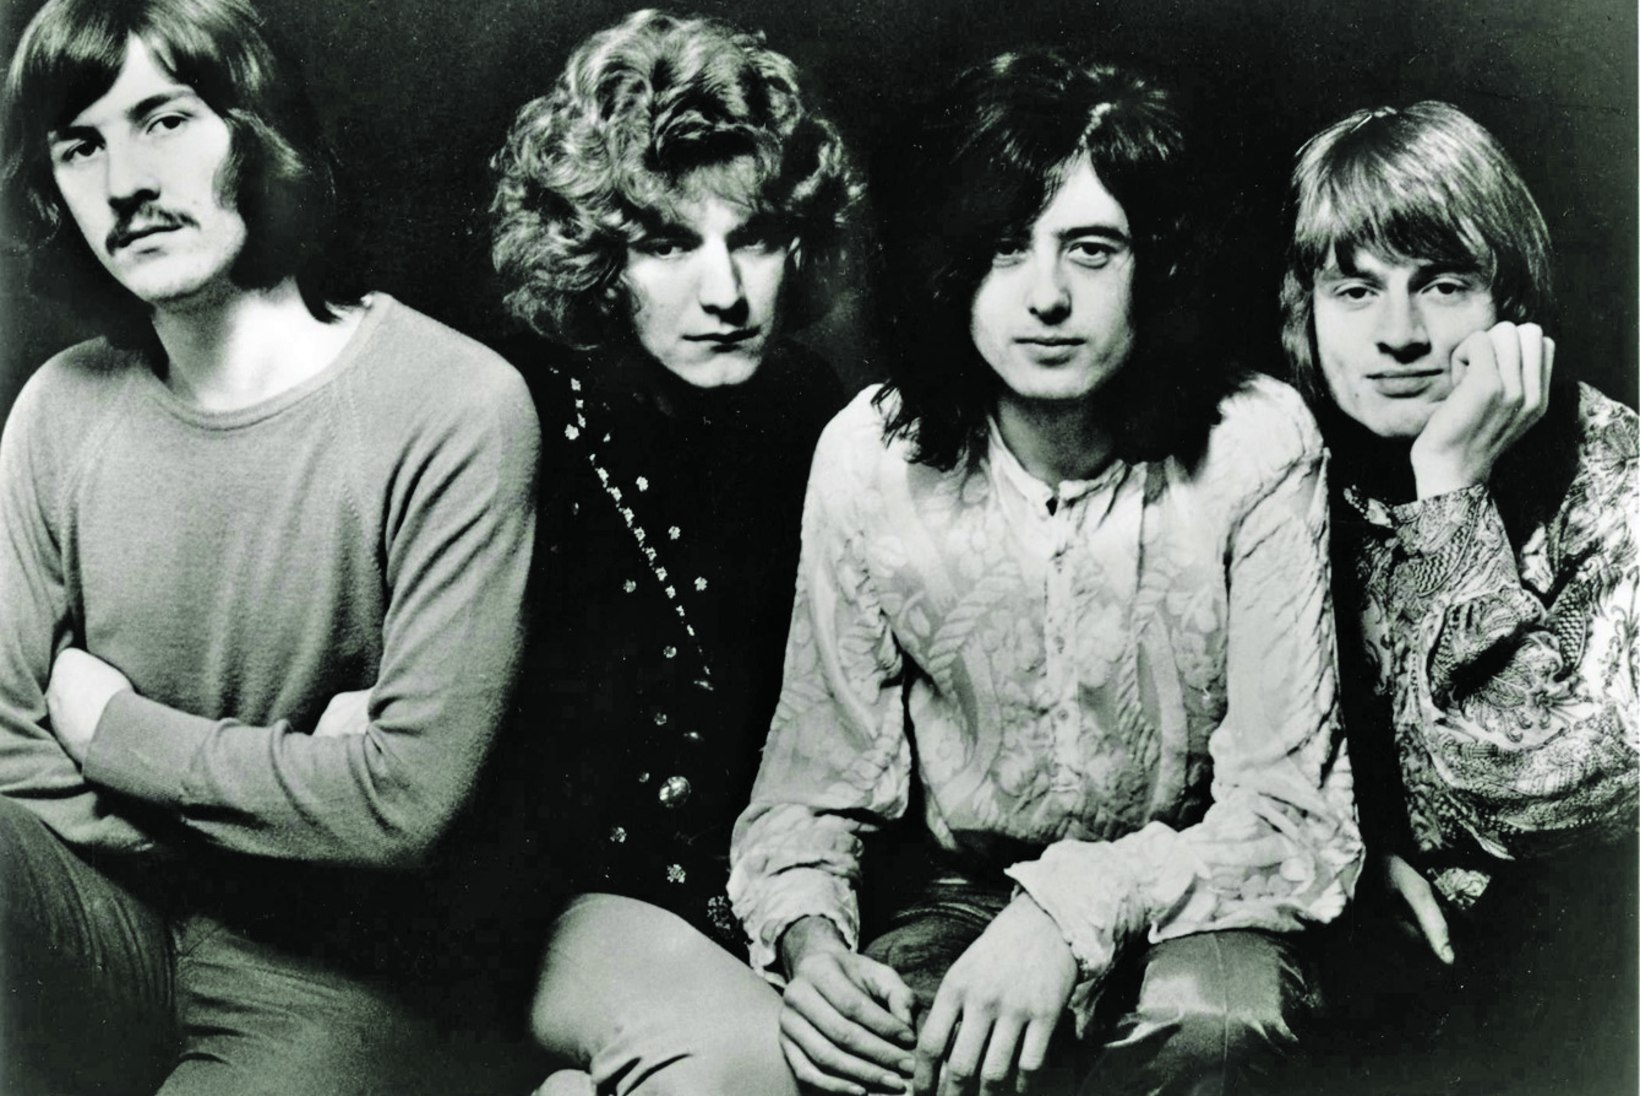 Robert Plant – sama hea kui vana Zeppelin